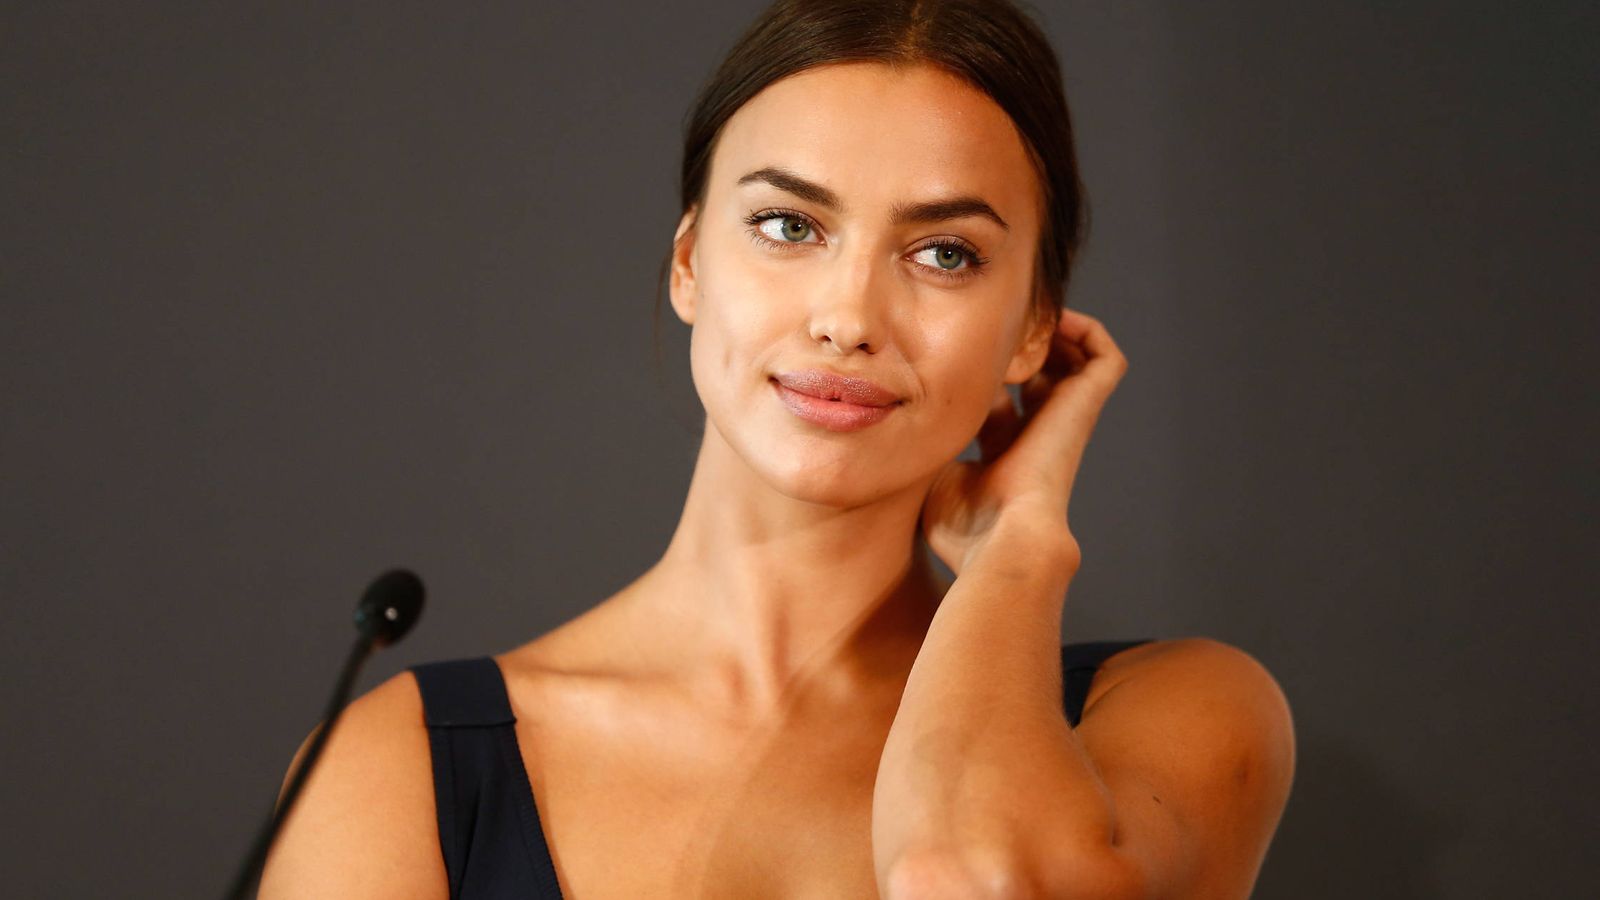 Foto: La modelo Irina Shayk durante una rueda de prensa el pasado mes de agosto. (Getty)